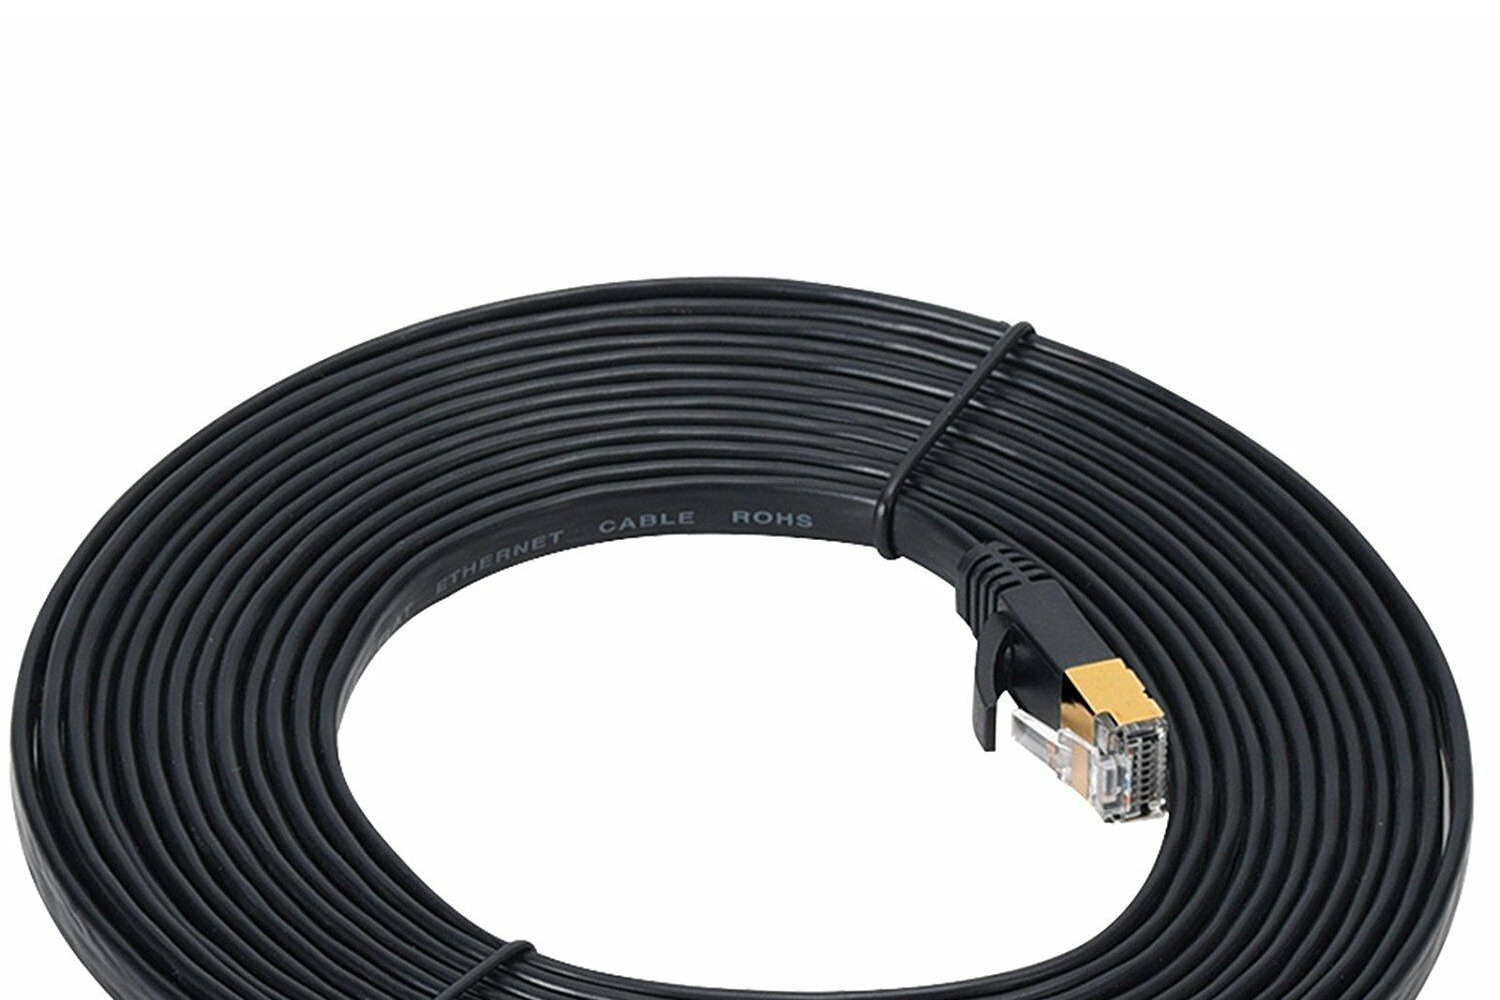 ข้อมูลเกี่ยวกับ สายแลน CAT7 แบบแบน ยาว 2m 5m 10m 15m 20m 30m CAT 7 Ethernet Cable RJ45 cat 7 cable rj 45 Network Cable lan Patch Cord For Router Laptop XBox PC